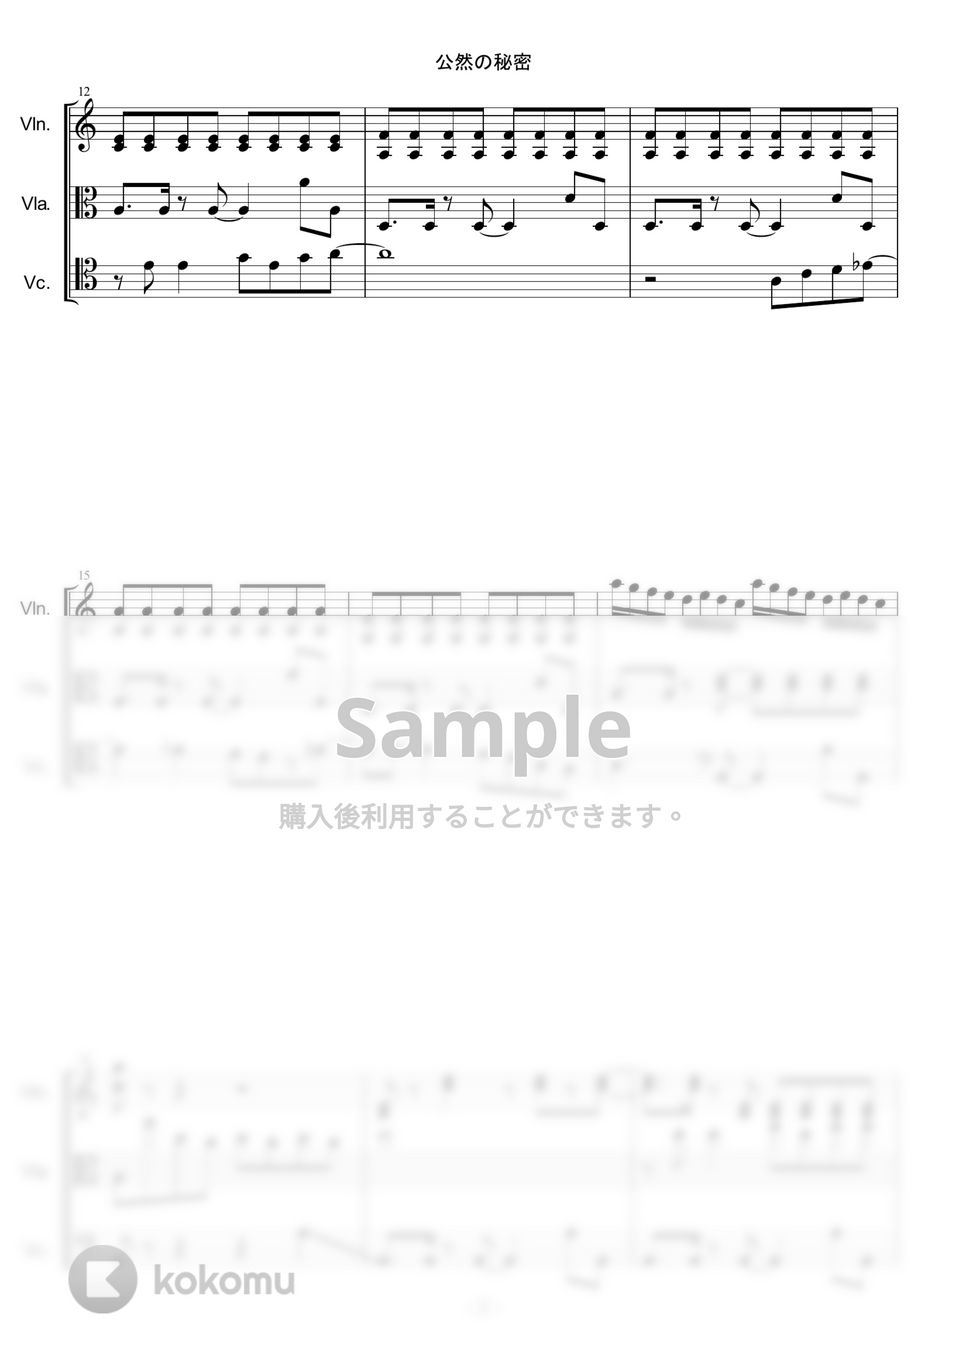 椎名林檎 - 公然の秘密 by PANDAYA